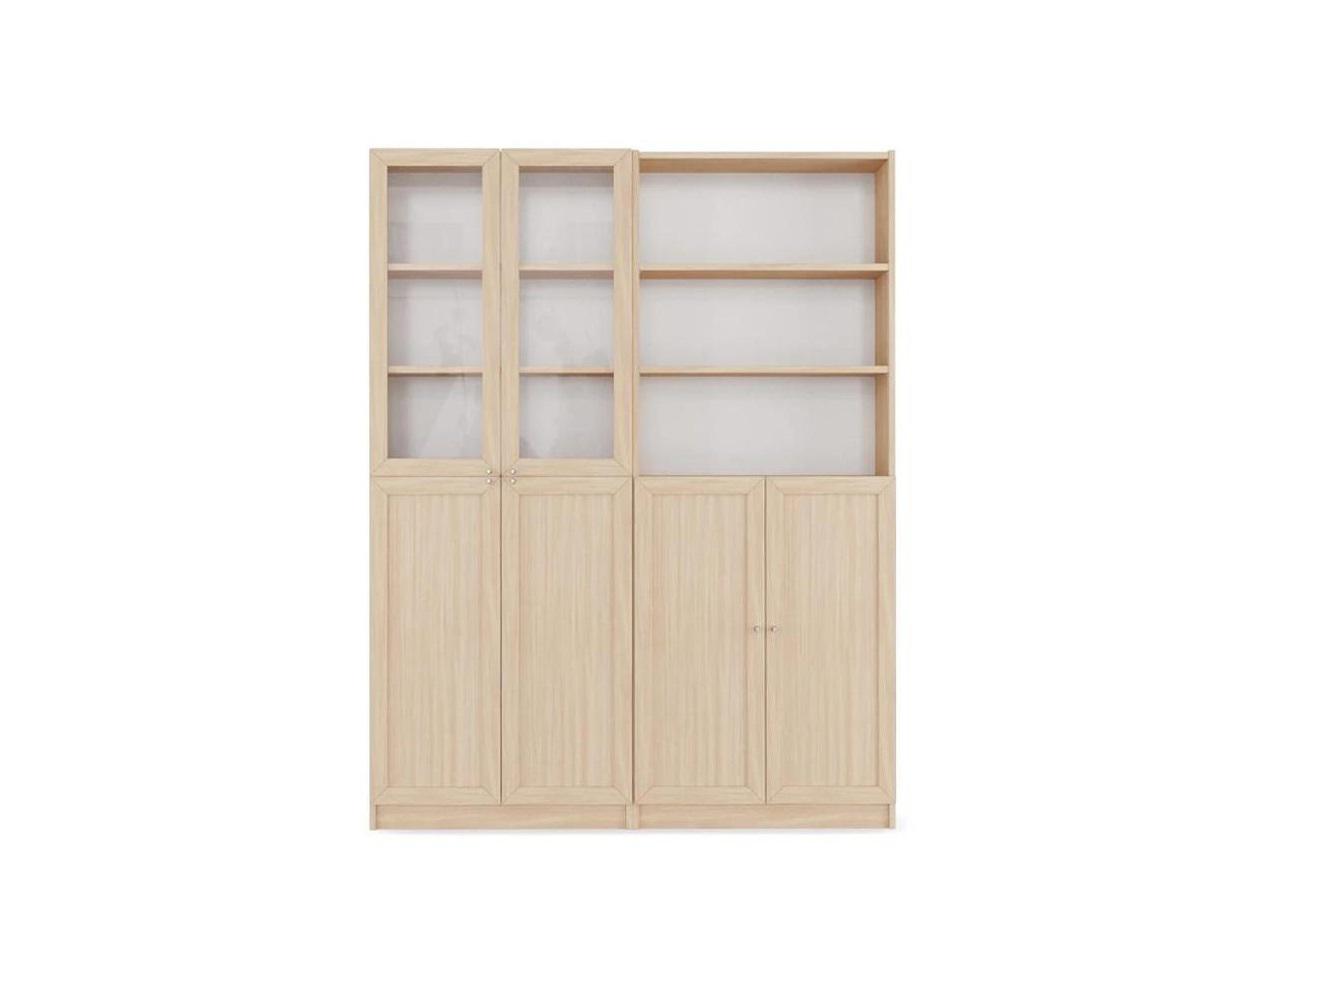  Книжный шкаф Билли 349 beige ИКЕА (IKEA) изображение товара